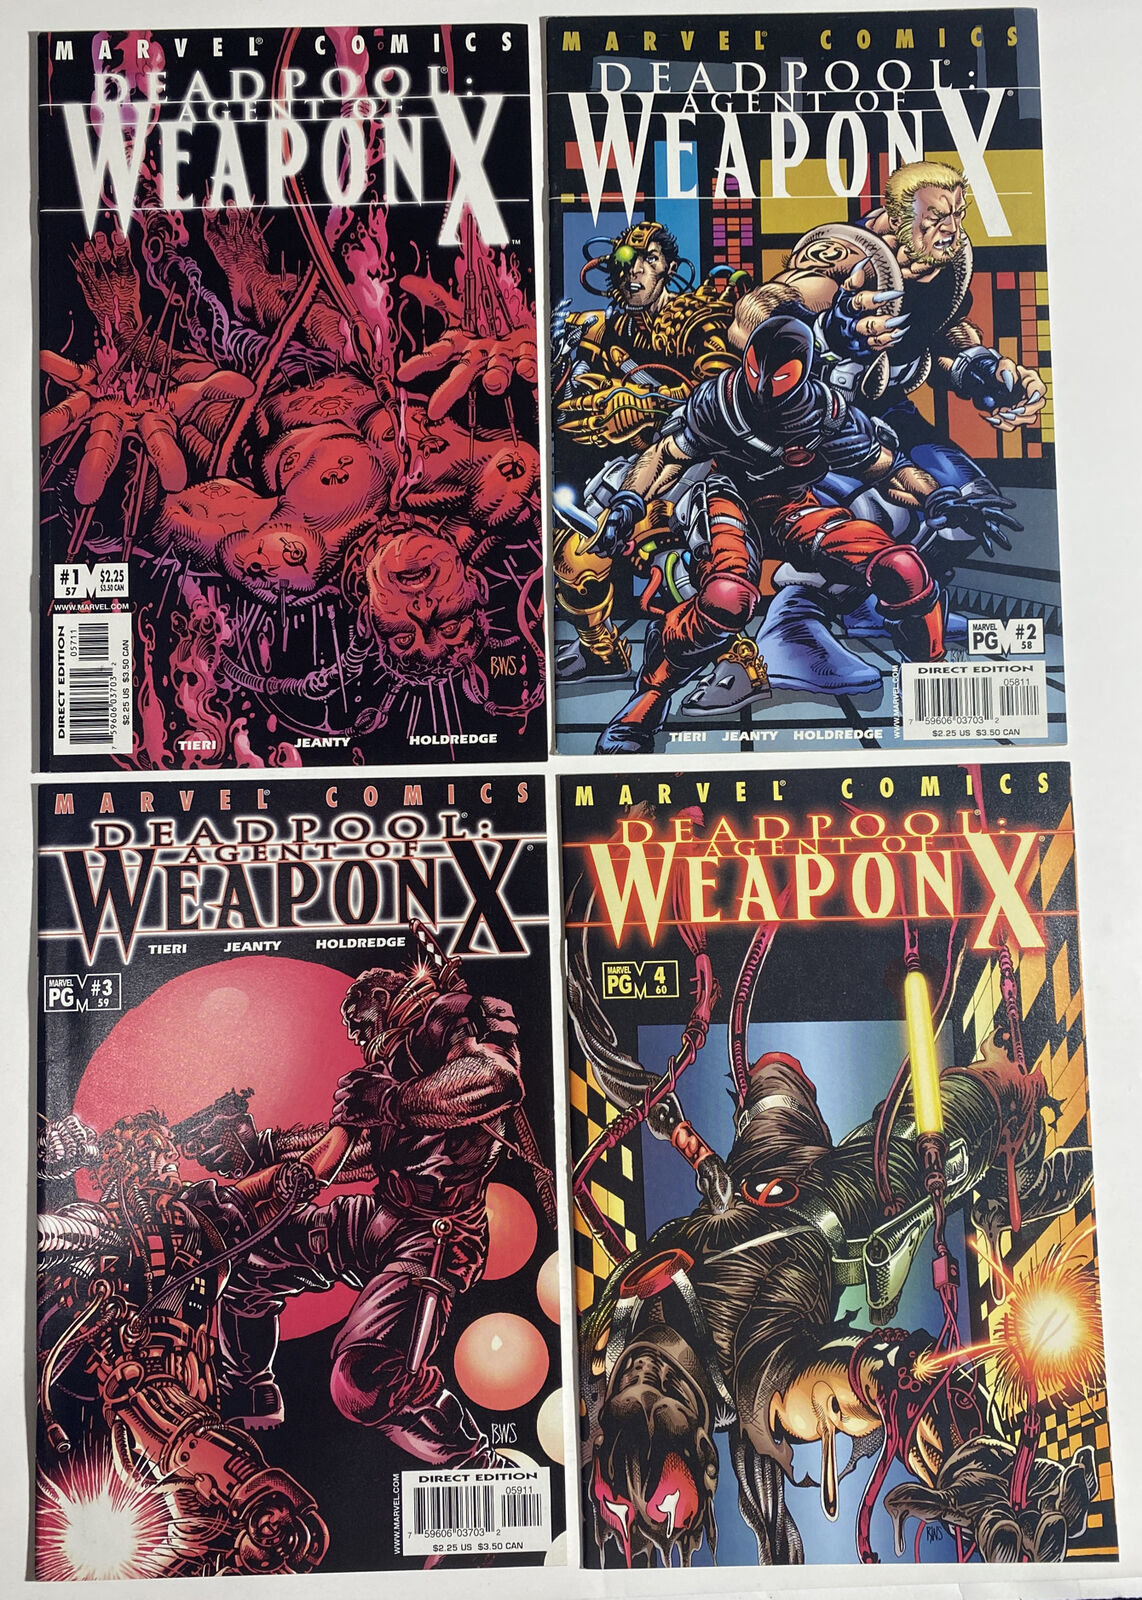 Deadpool “Weapon X” 1-4, Issues #57-60 Run Marvel 2002 - 58 59 2 3 Windsor Smith